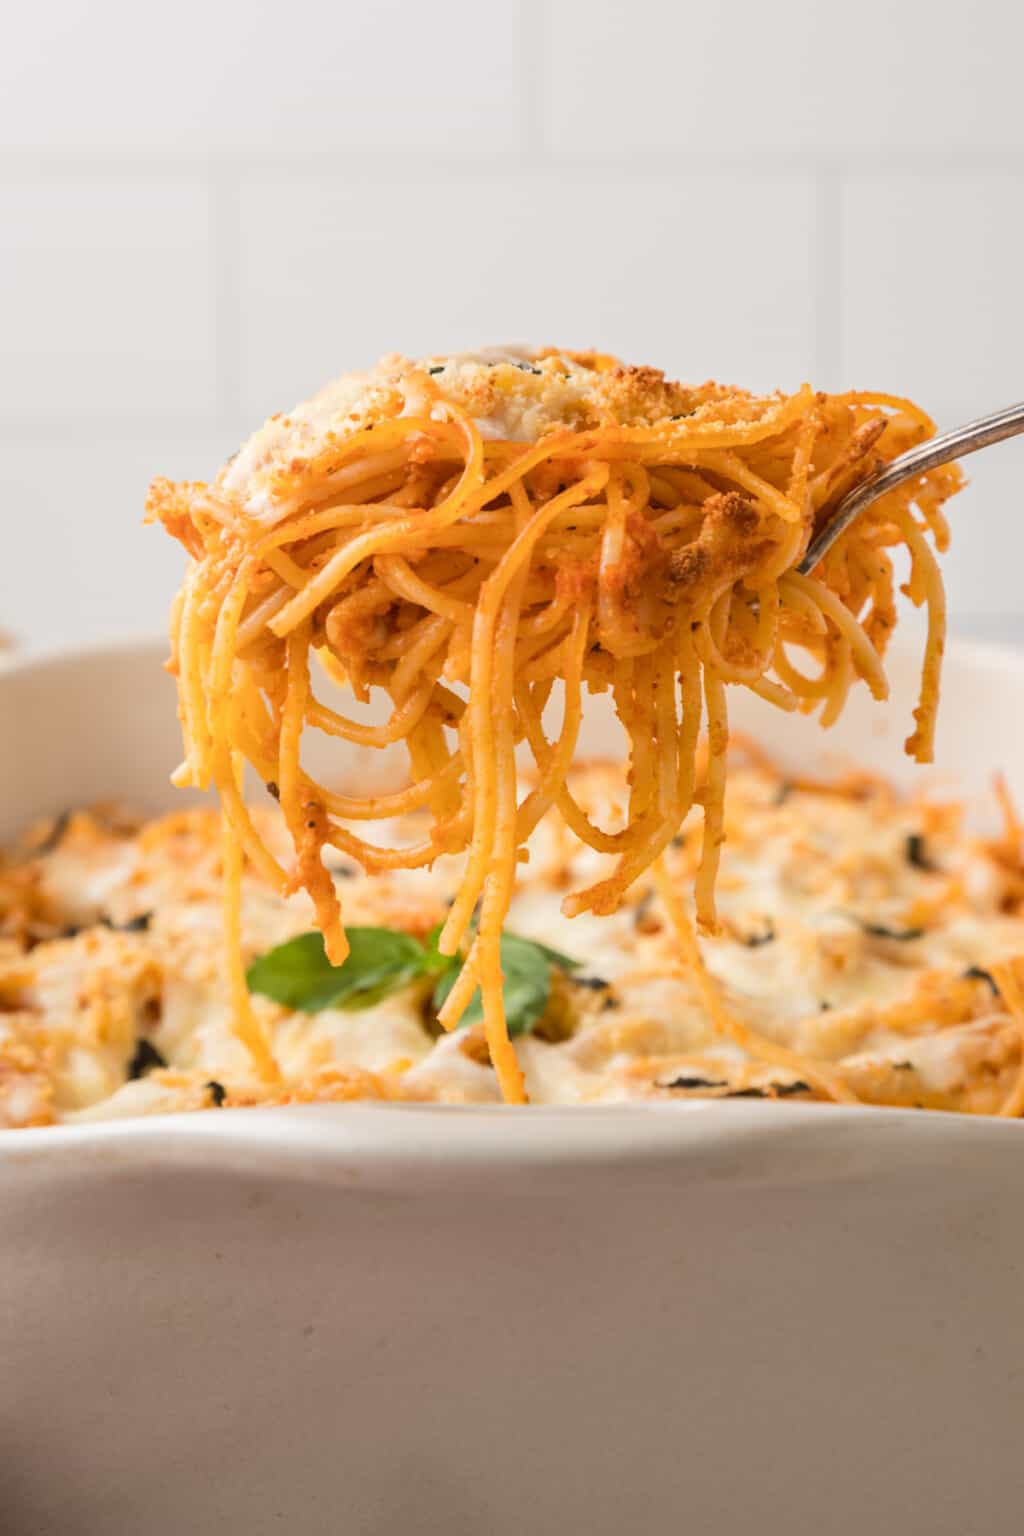 Easy Cheesy Baked Spaghetti Recipe